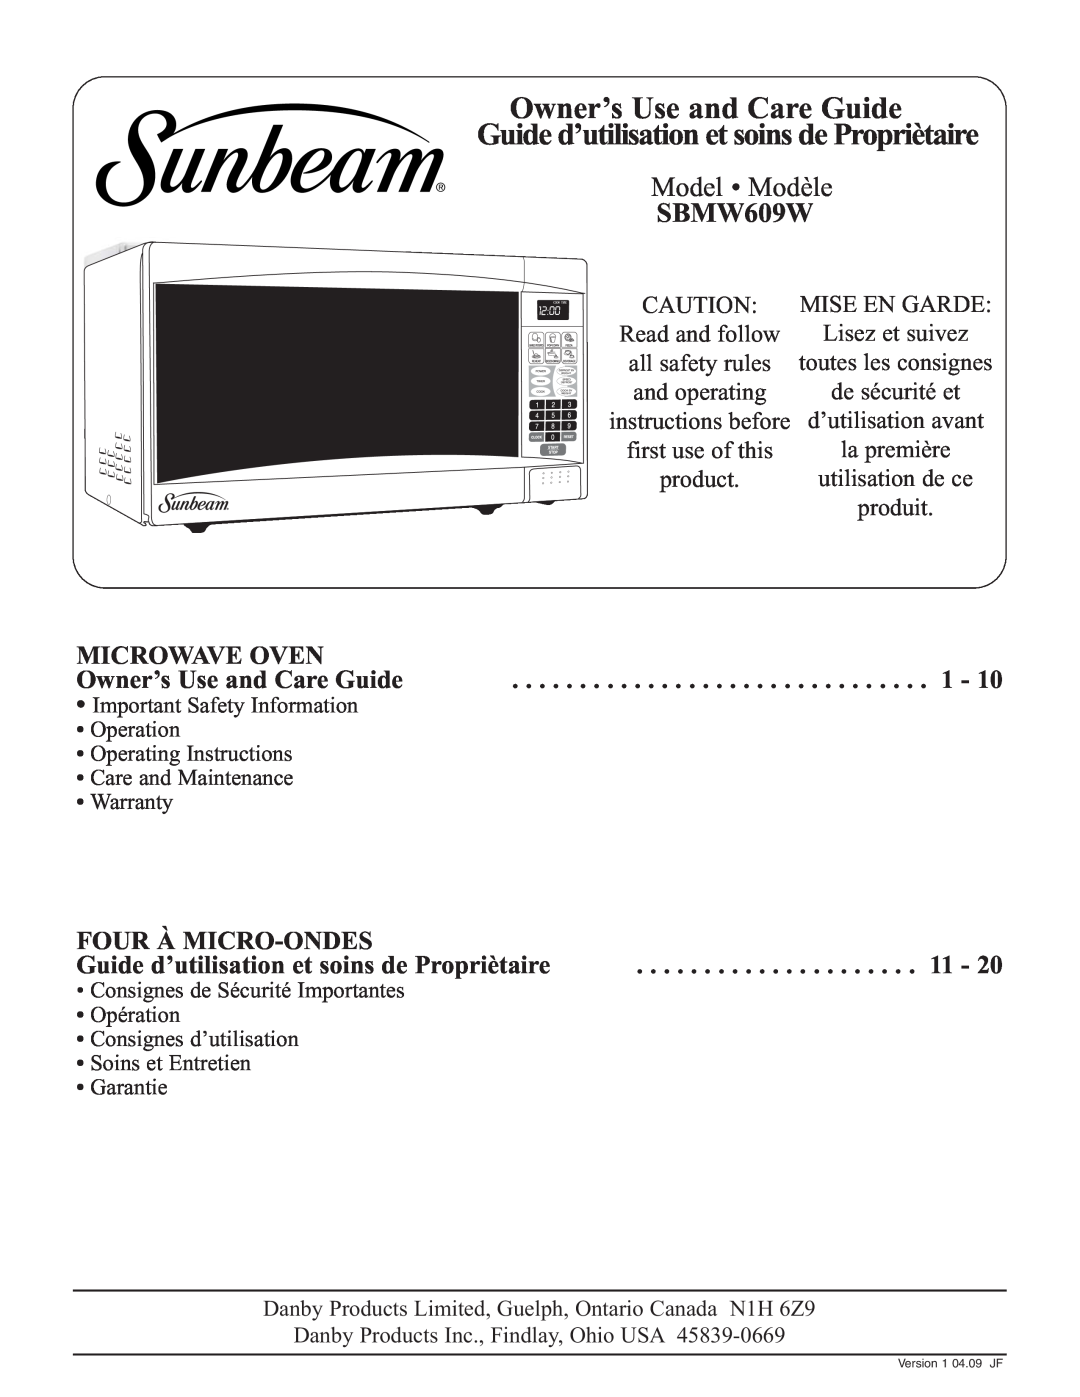 Sunbeam SBMW609W warranty Owner’s Use and Care Guide, Guide d’utilisation et soins de Propriètaire, Model Modèle 